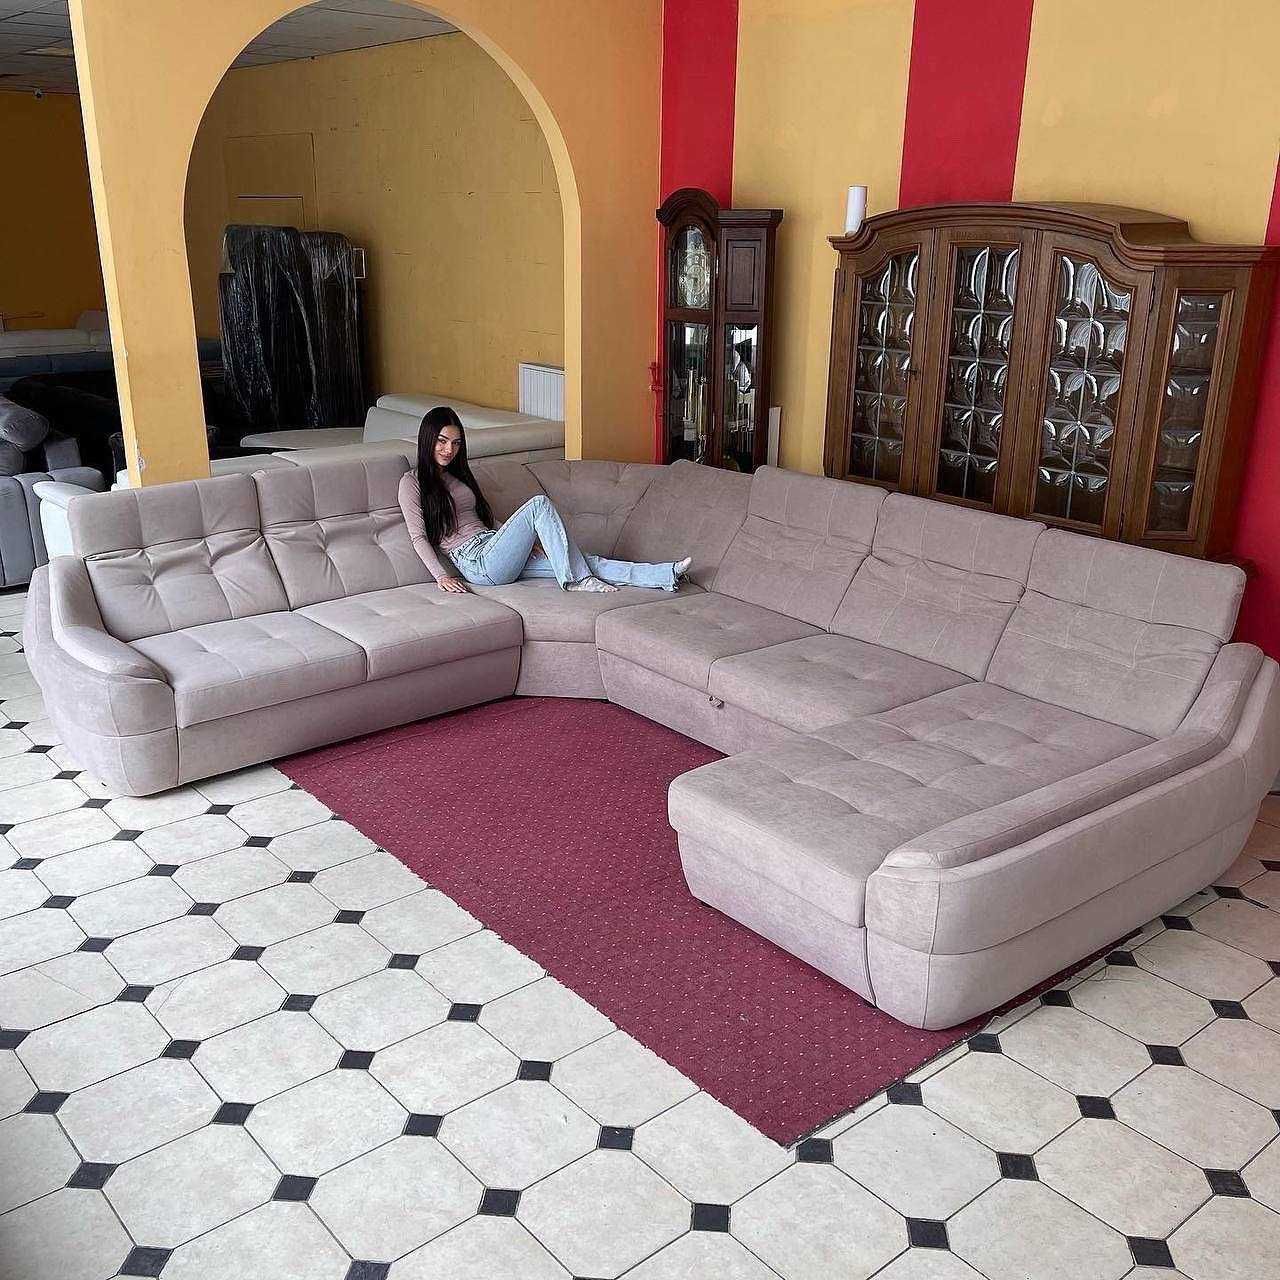 БЕЗКОШТОВНА ДОСТАВКА Новий розкладний диван для щоденного сну